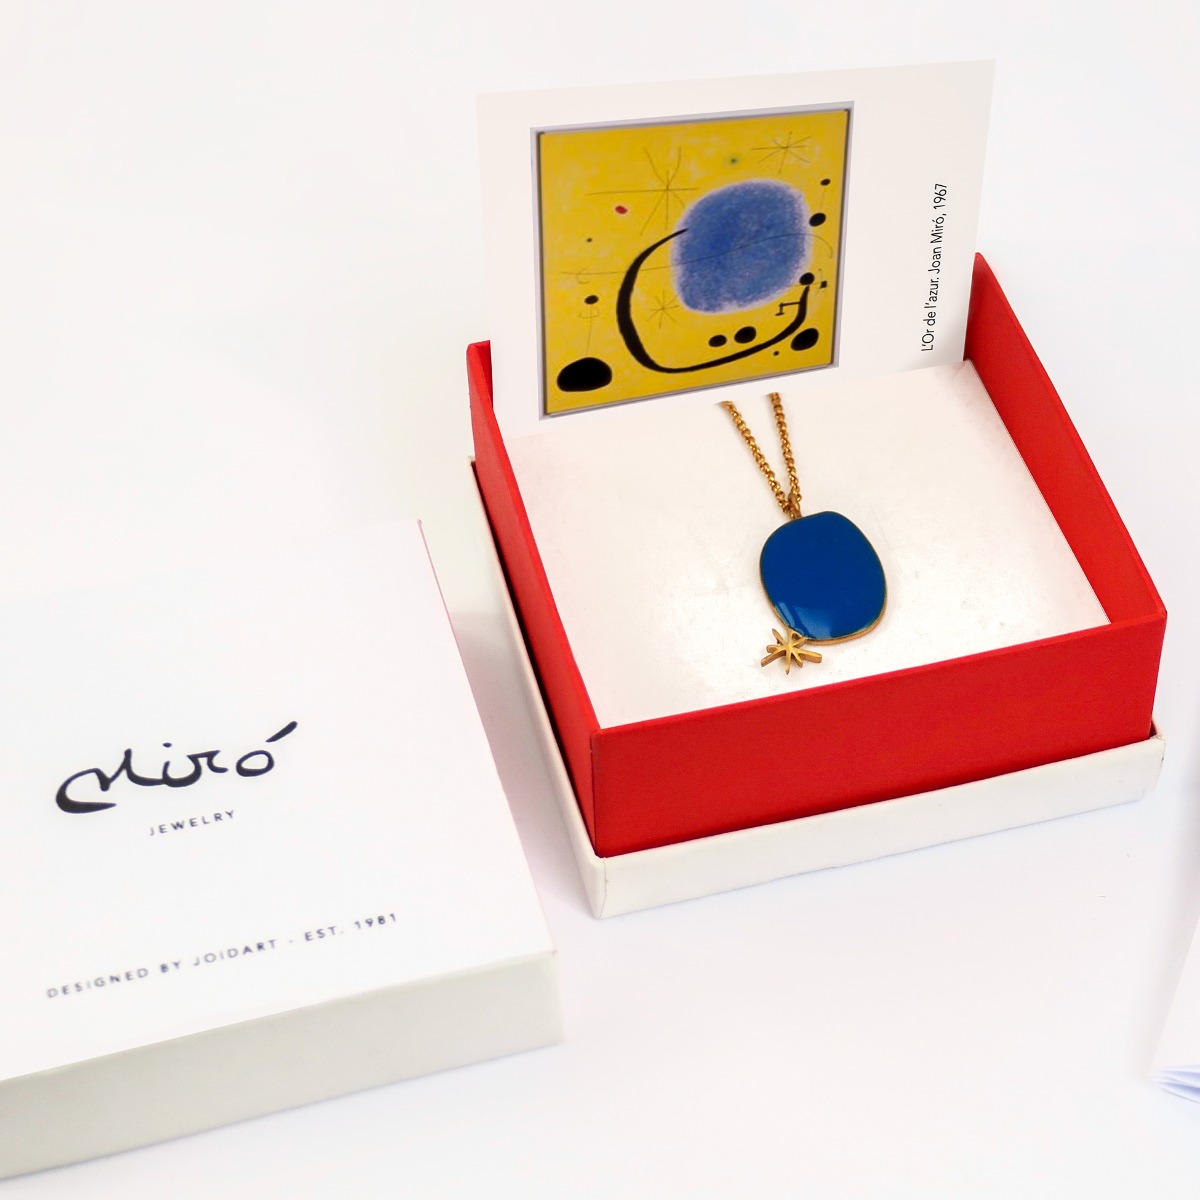 Miró Blue Pendant